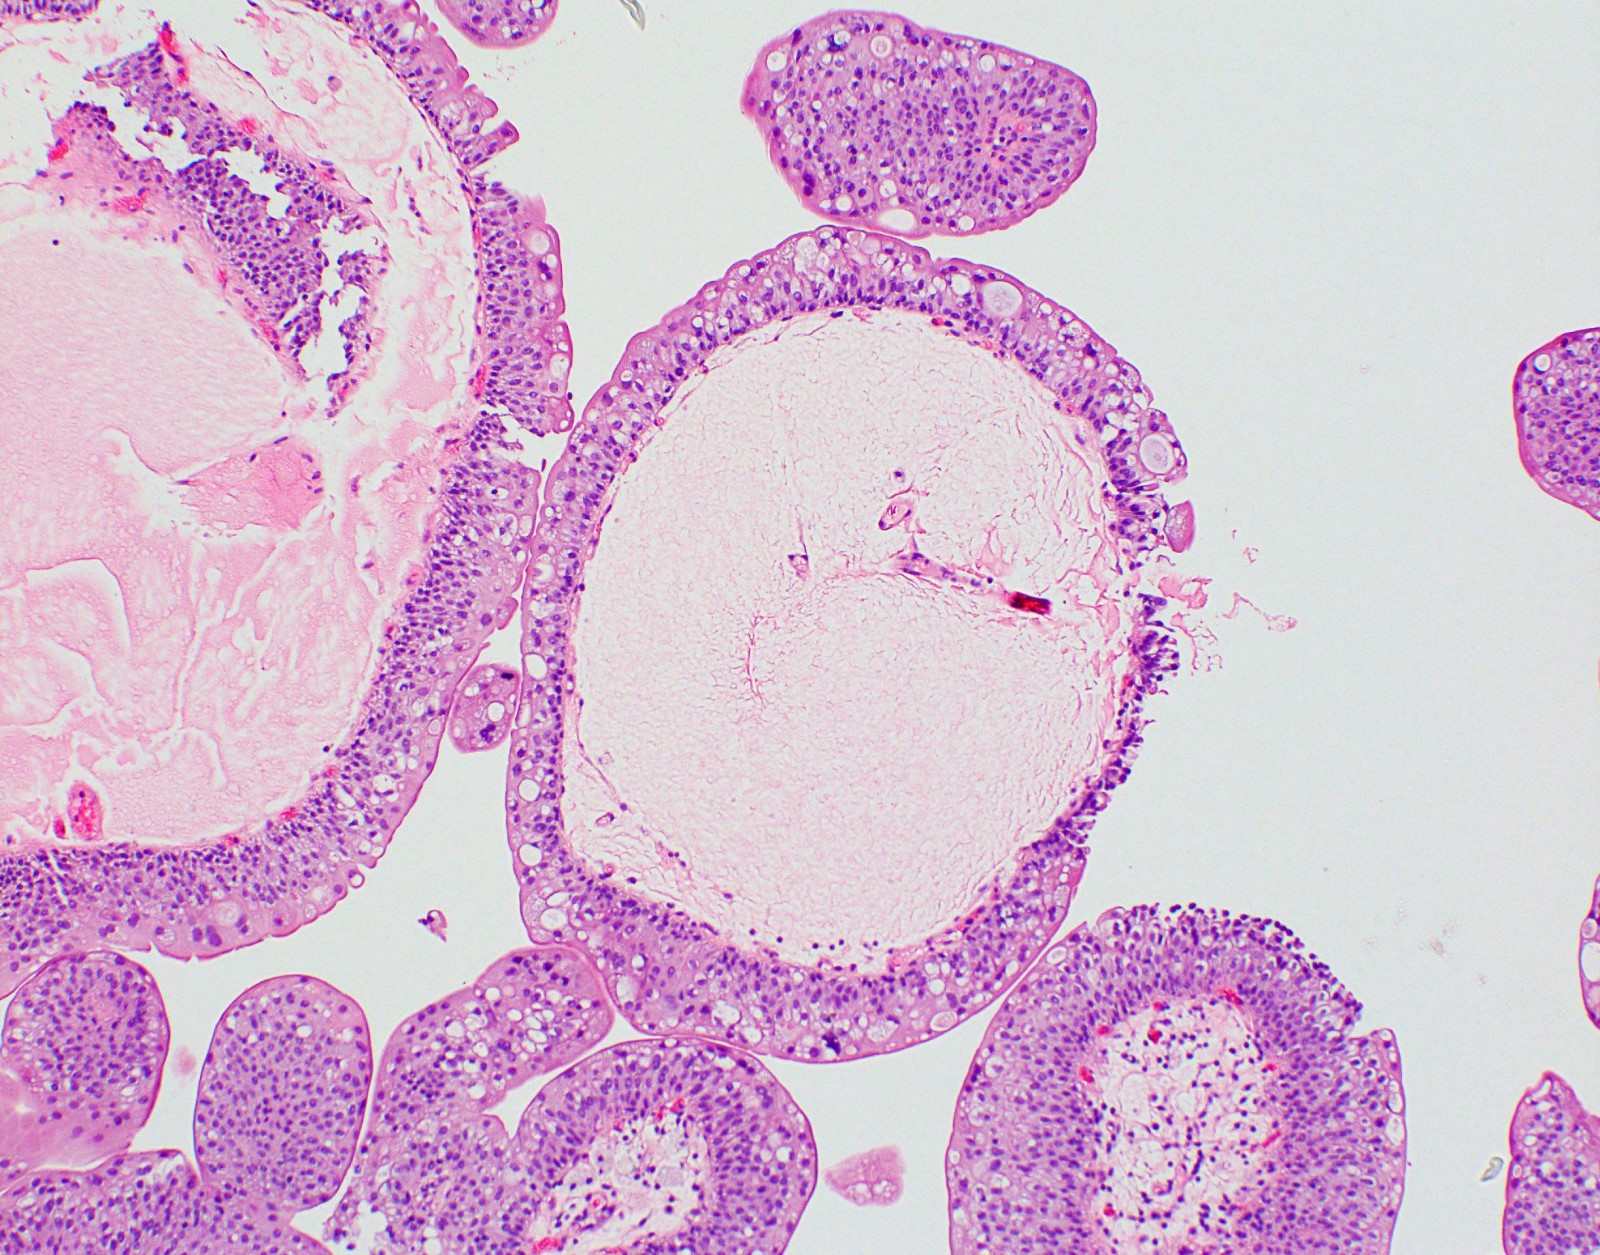 Urethral papilloma pathology outlines